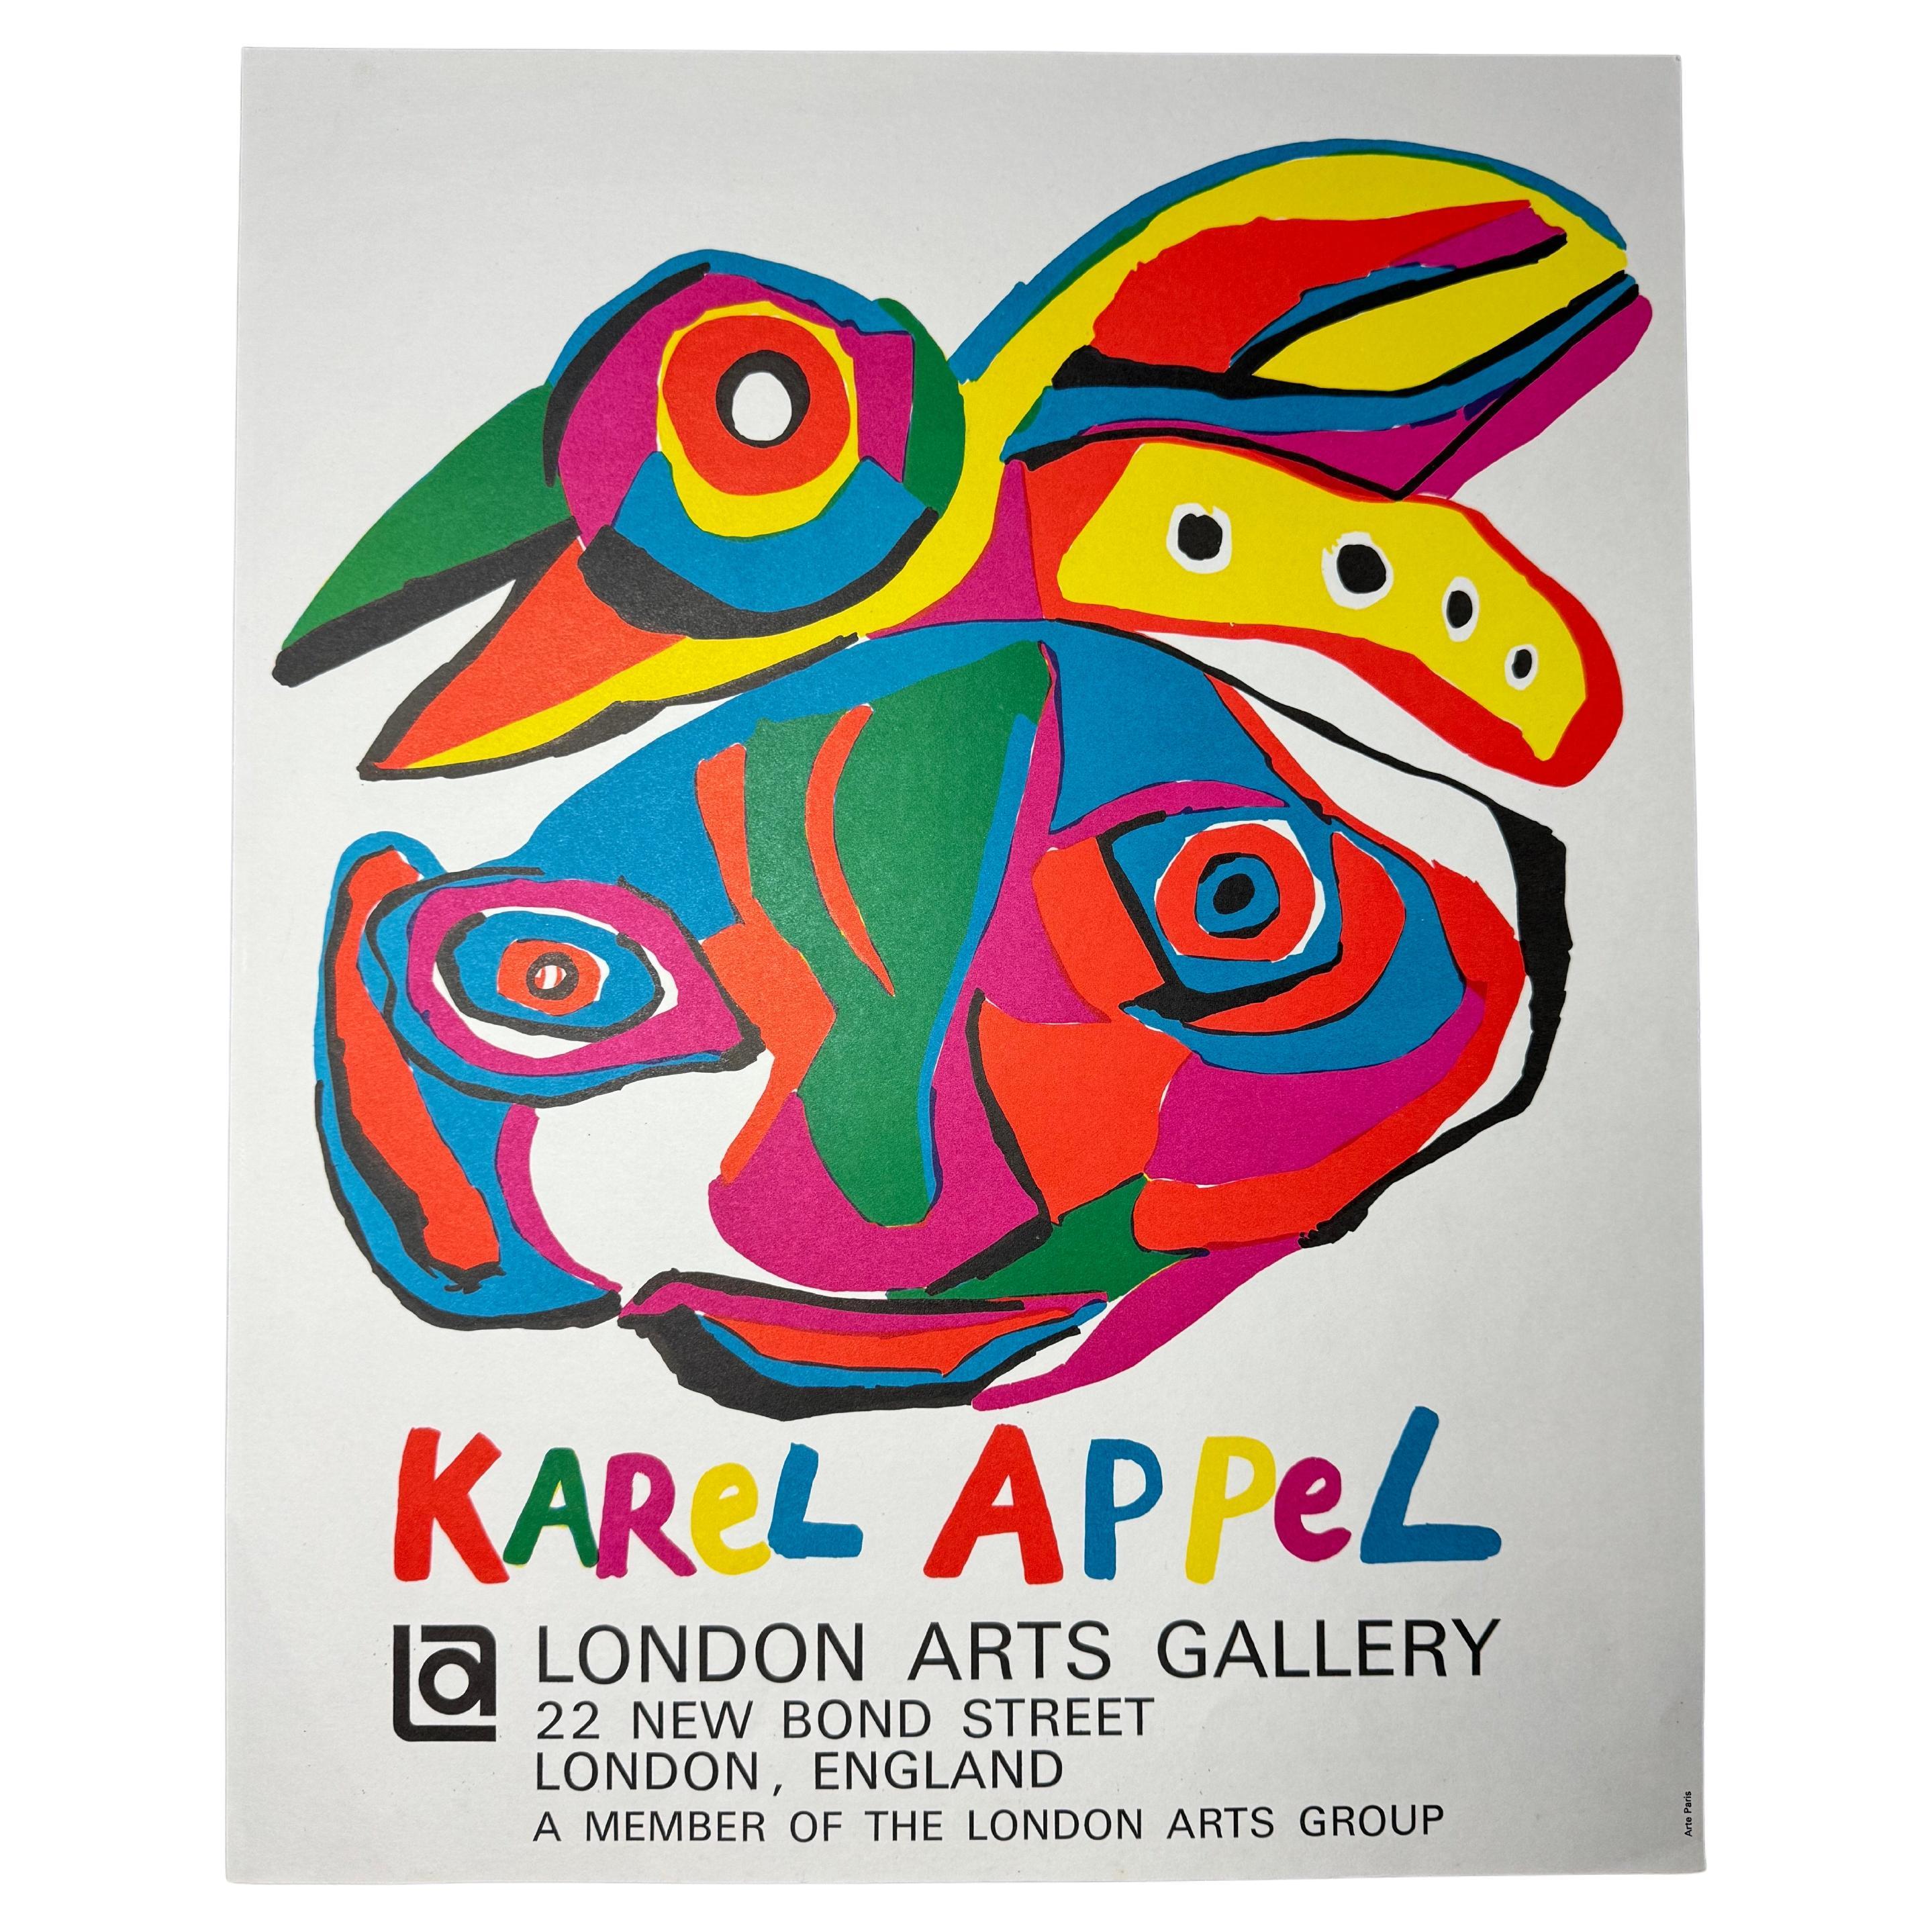 Impression d'exposition « London Arts Gallery » vintage Karel Appel 